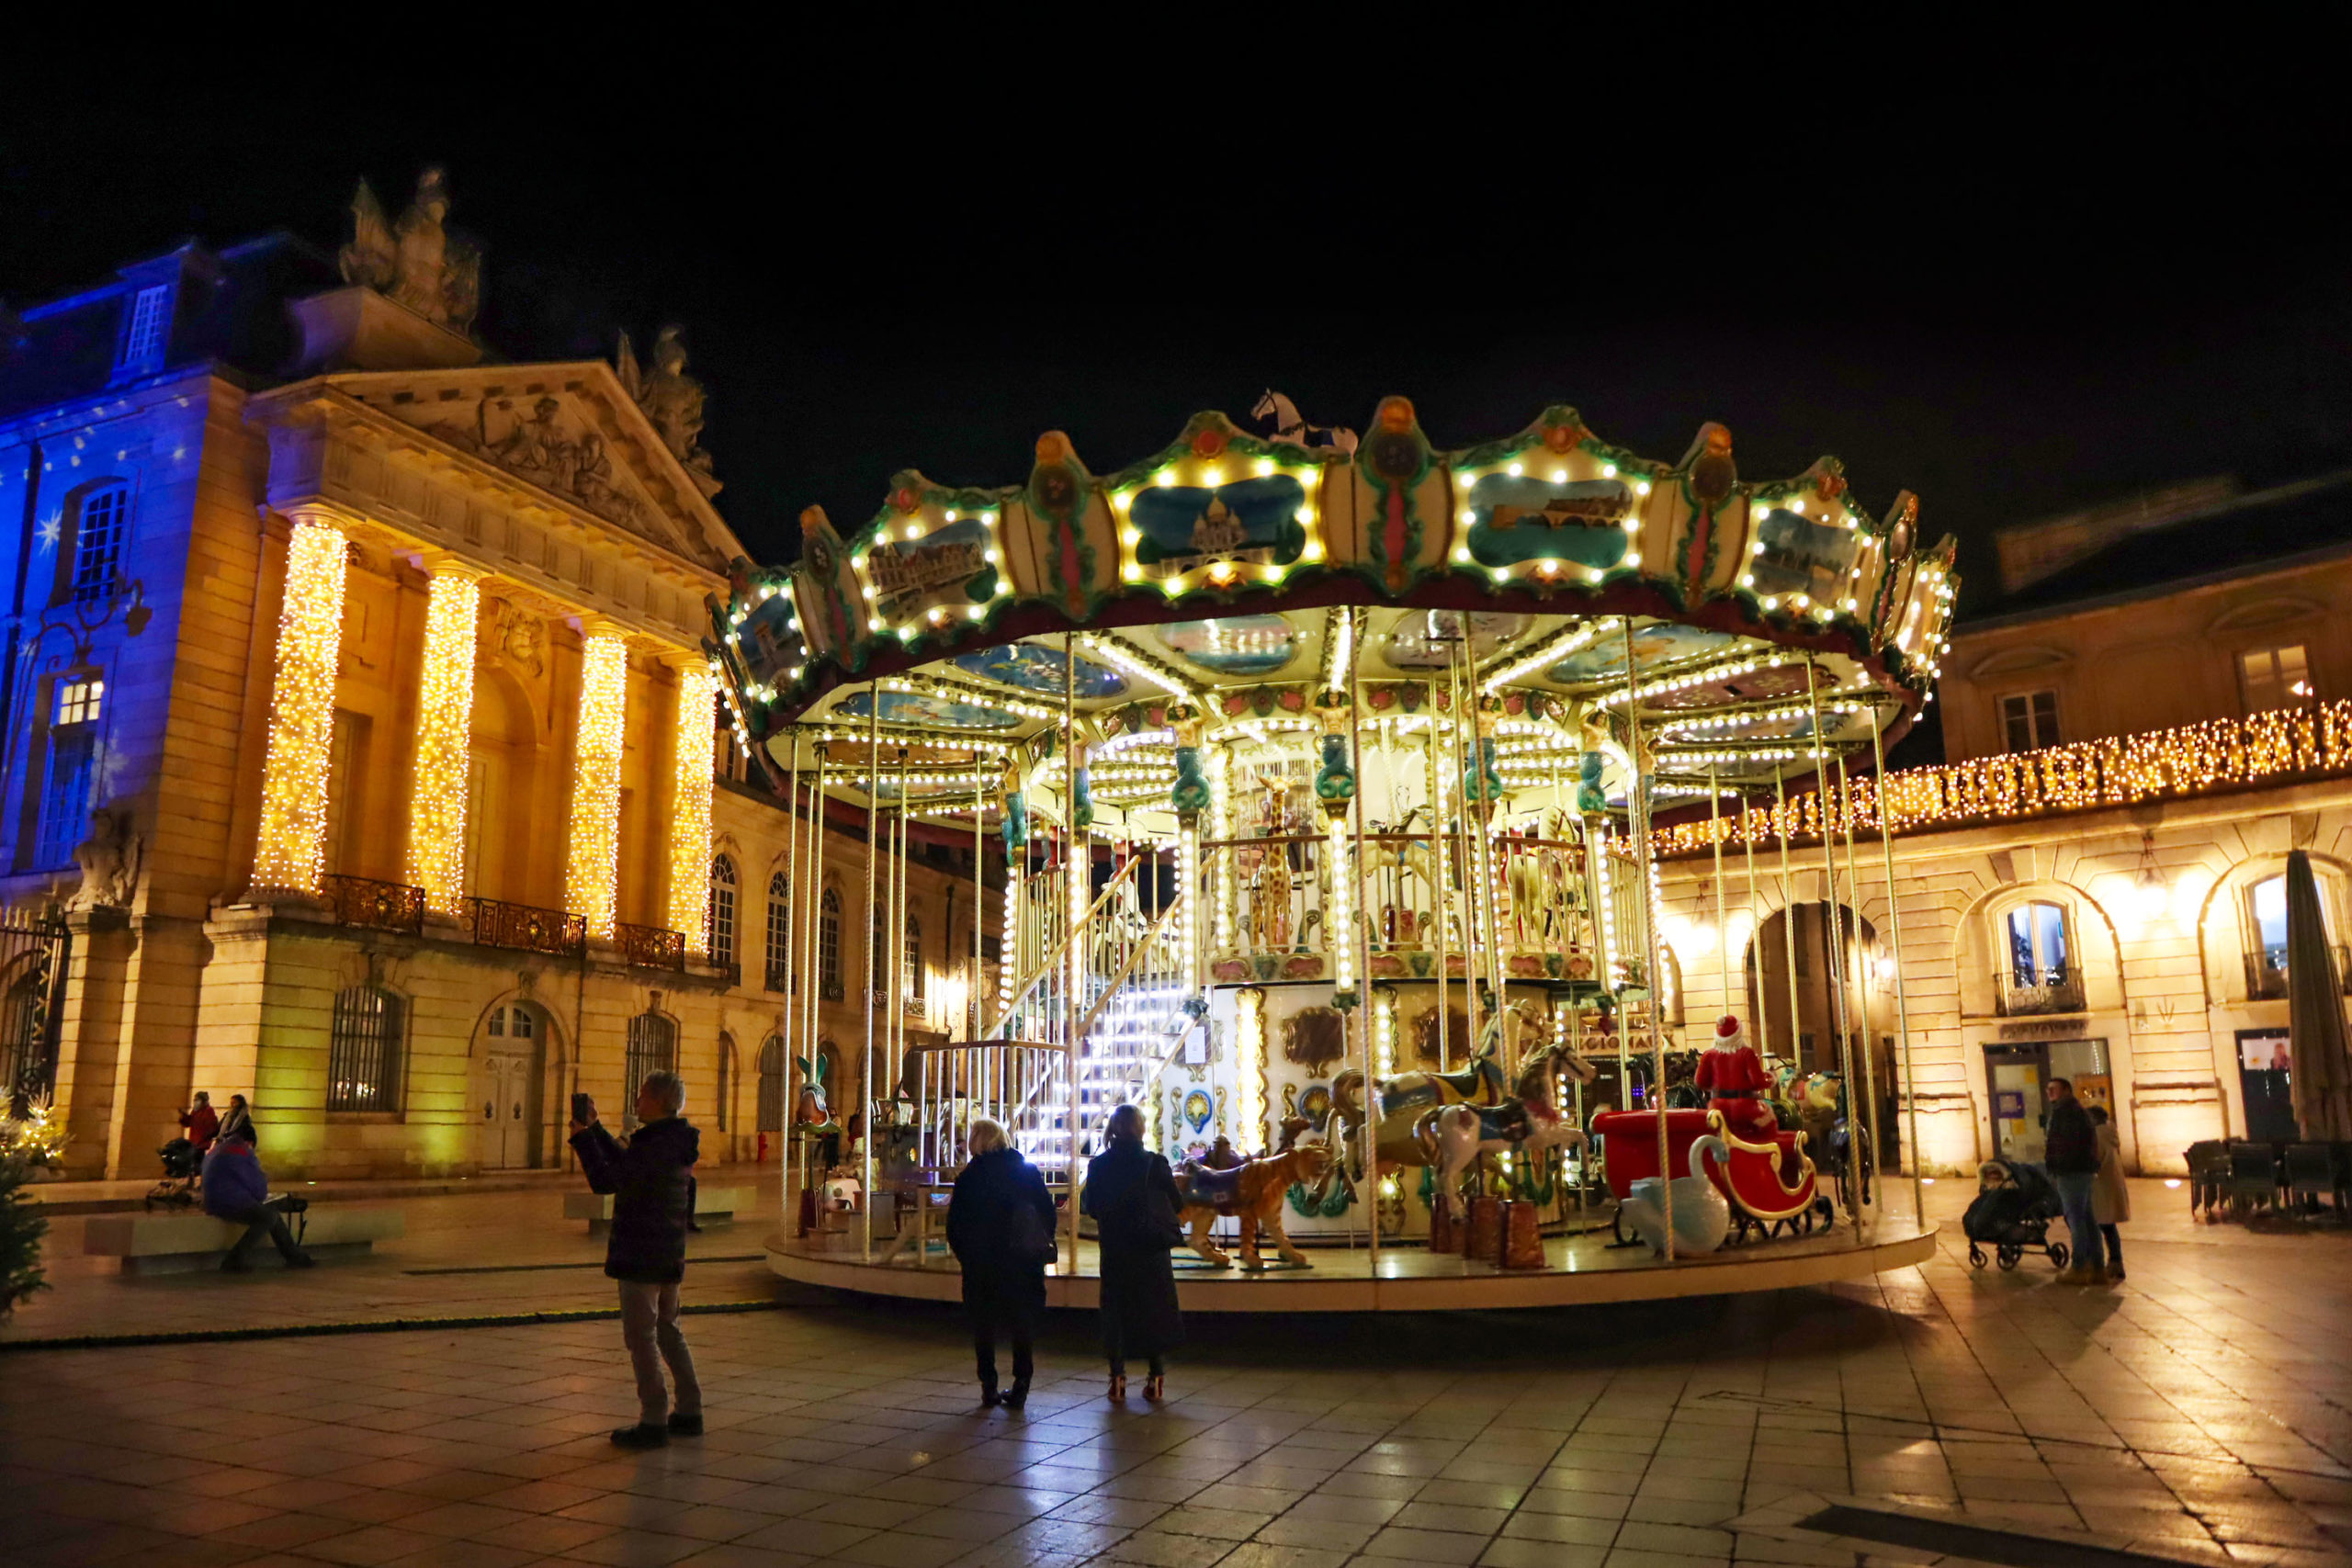 The merry-go-round on Place de la Libération © Office de Tourisme de Dijon Métropole